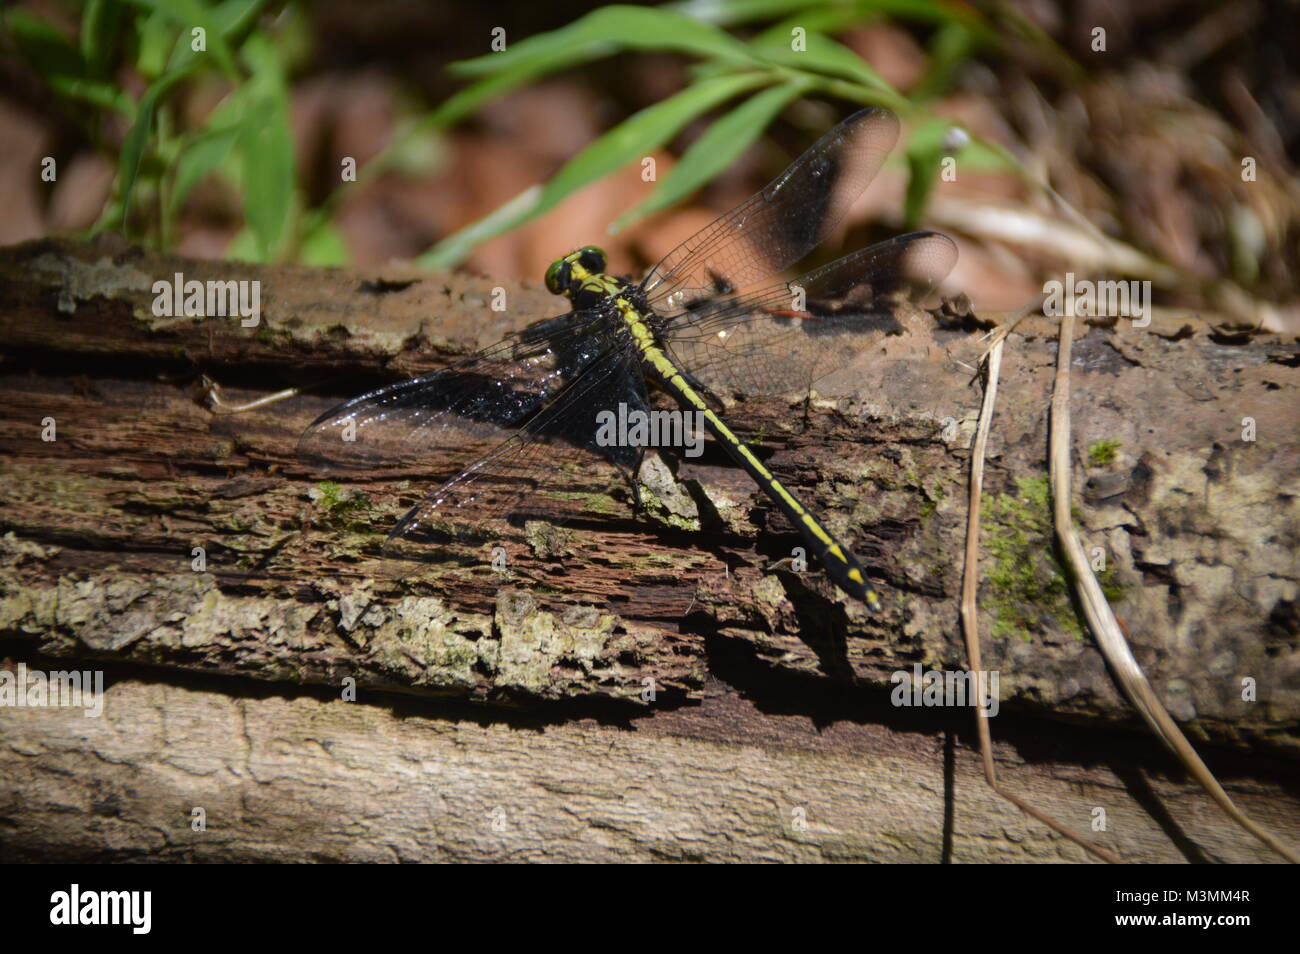 Un verde e nero Dragonfly sul registro con alcuni greenage nello sfondo dell'immagine. Foto Stock